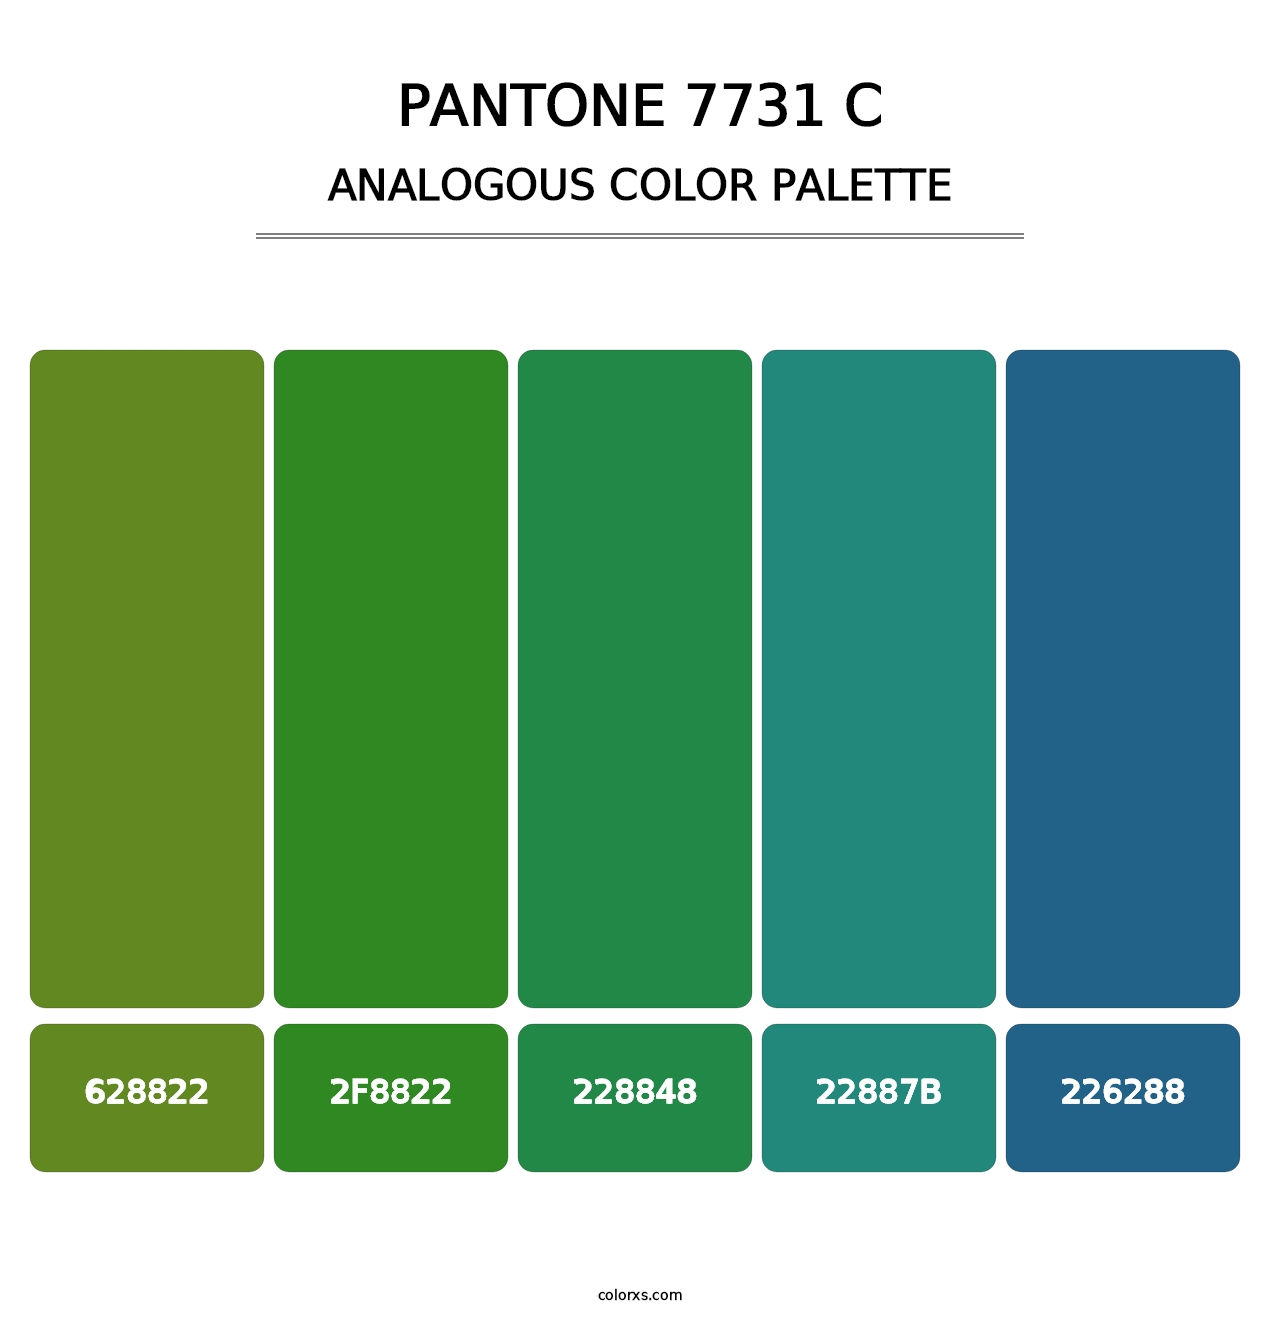 PANTONE 7731 C - Analogous Color Palette